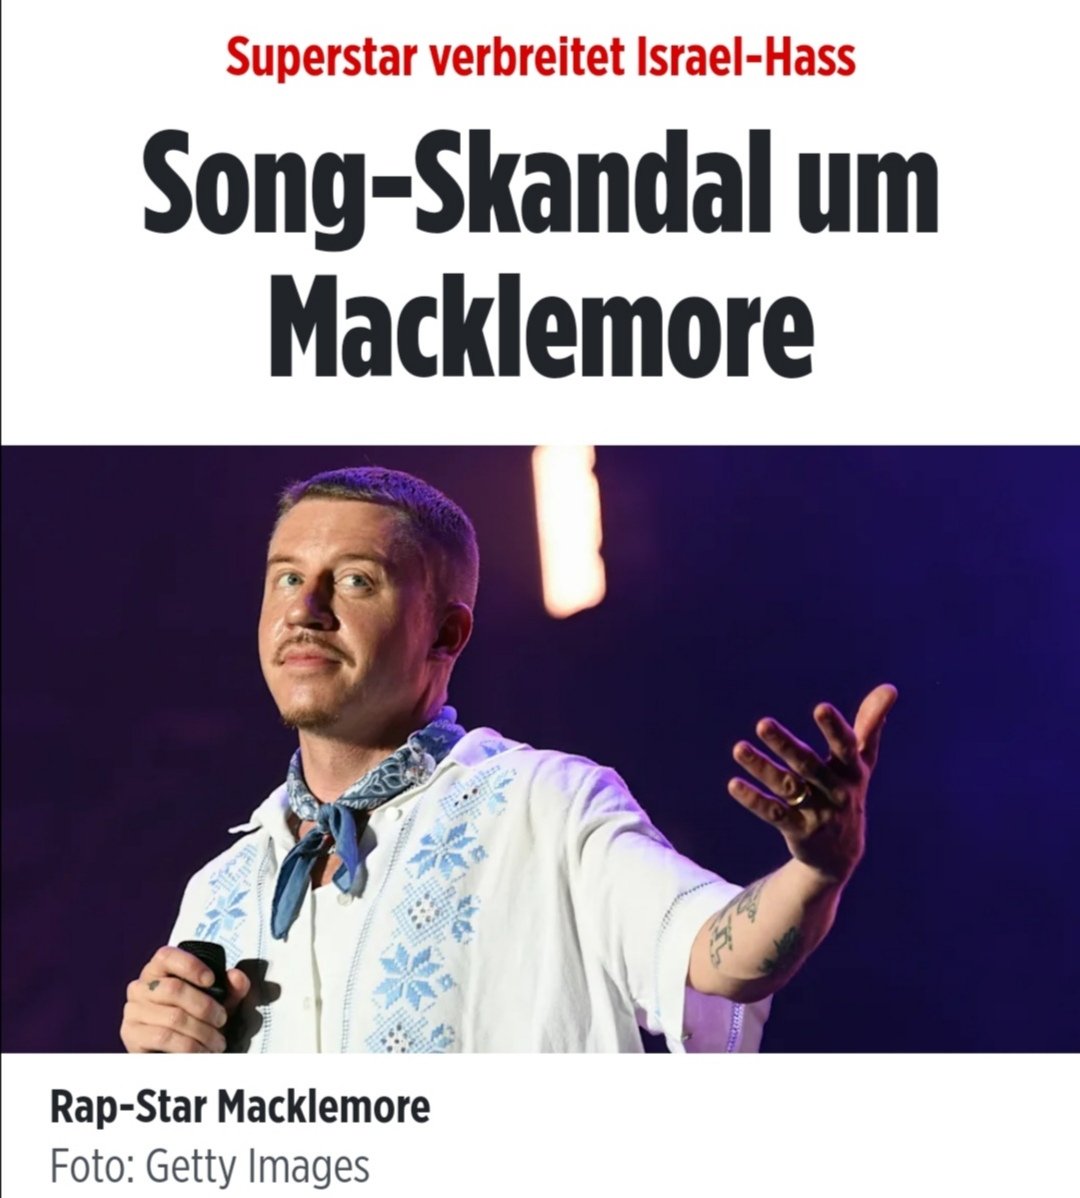 Macklemore haut Pro-Palästina Rap raus und wird dafür von der Blöd gecanceld.
Während die Staats-MC's der Antilopengang für ihren Pro-Genozid Rap von Blöd angehimmelt werden.
Egal Macklemores Song hat an einem Tag 100mal mehr Aufrufe als der Song der Springerrapper in einem Monat